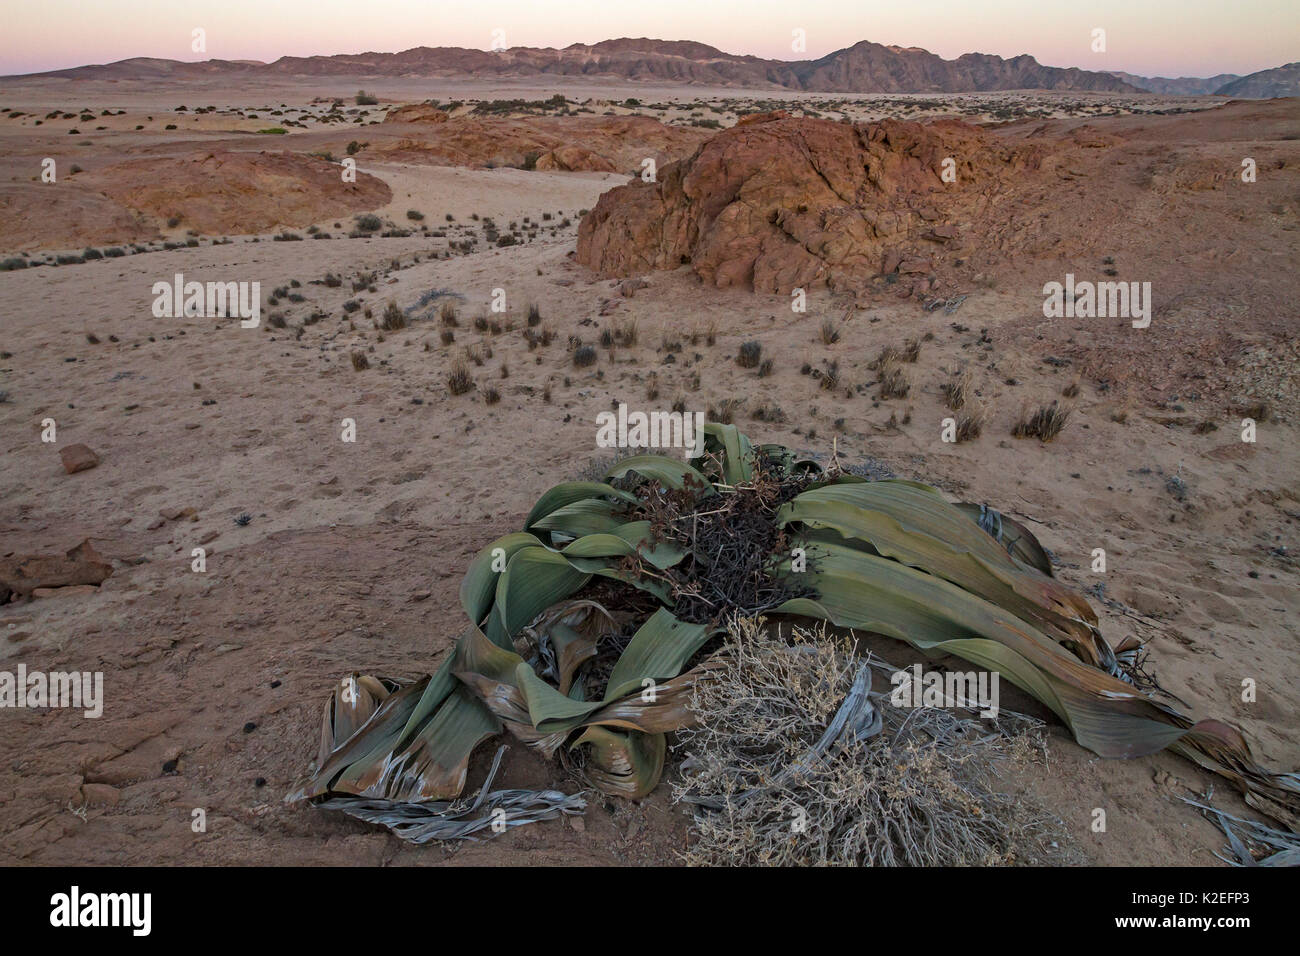 Die Wüste endemisch Welwitschia Pflanzen (Welwitschia Mirabilis) bei Sonnenuntergang in der Nähe von Swakopmund, Namibia. Diese Arten gehören zu den ältesten Organismen auf dem Planeten: Einige Einzelpersonen konnten mehr als 2000 Jahre alt sein. Juni 2016 Stockfoto